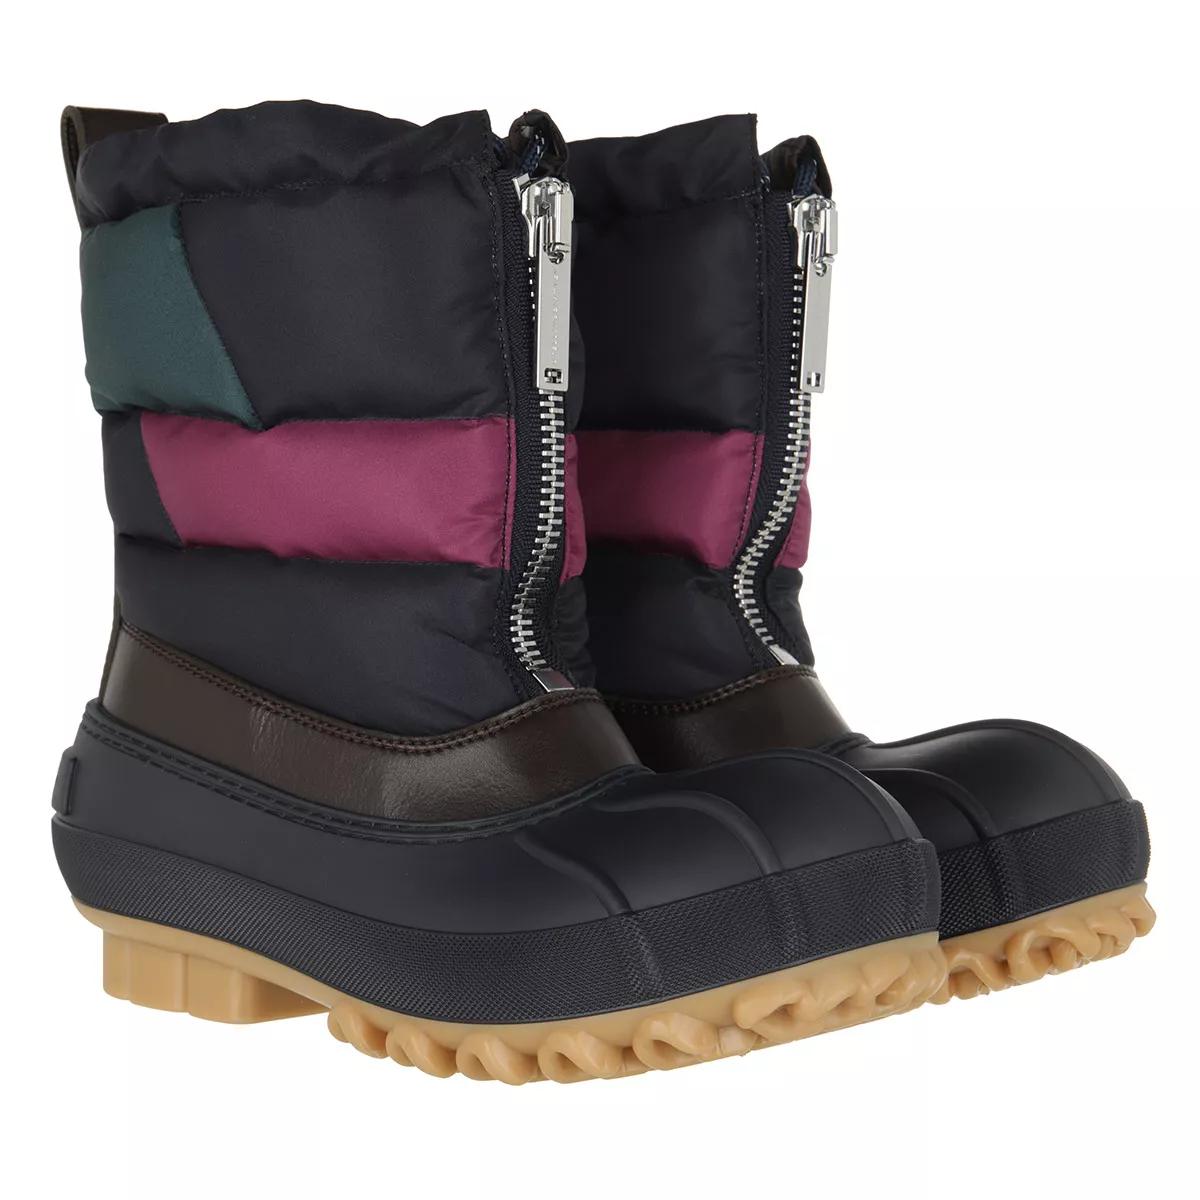 Stella McCartney Boots & Stiefeletten - Boots - Gr. 36 (EU) - in Bunt - für Damen von Stella Mccartney